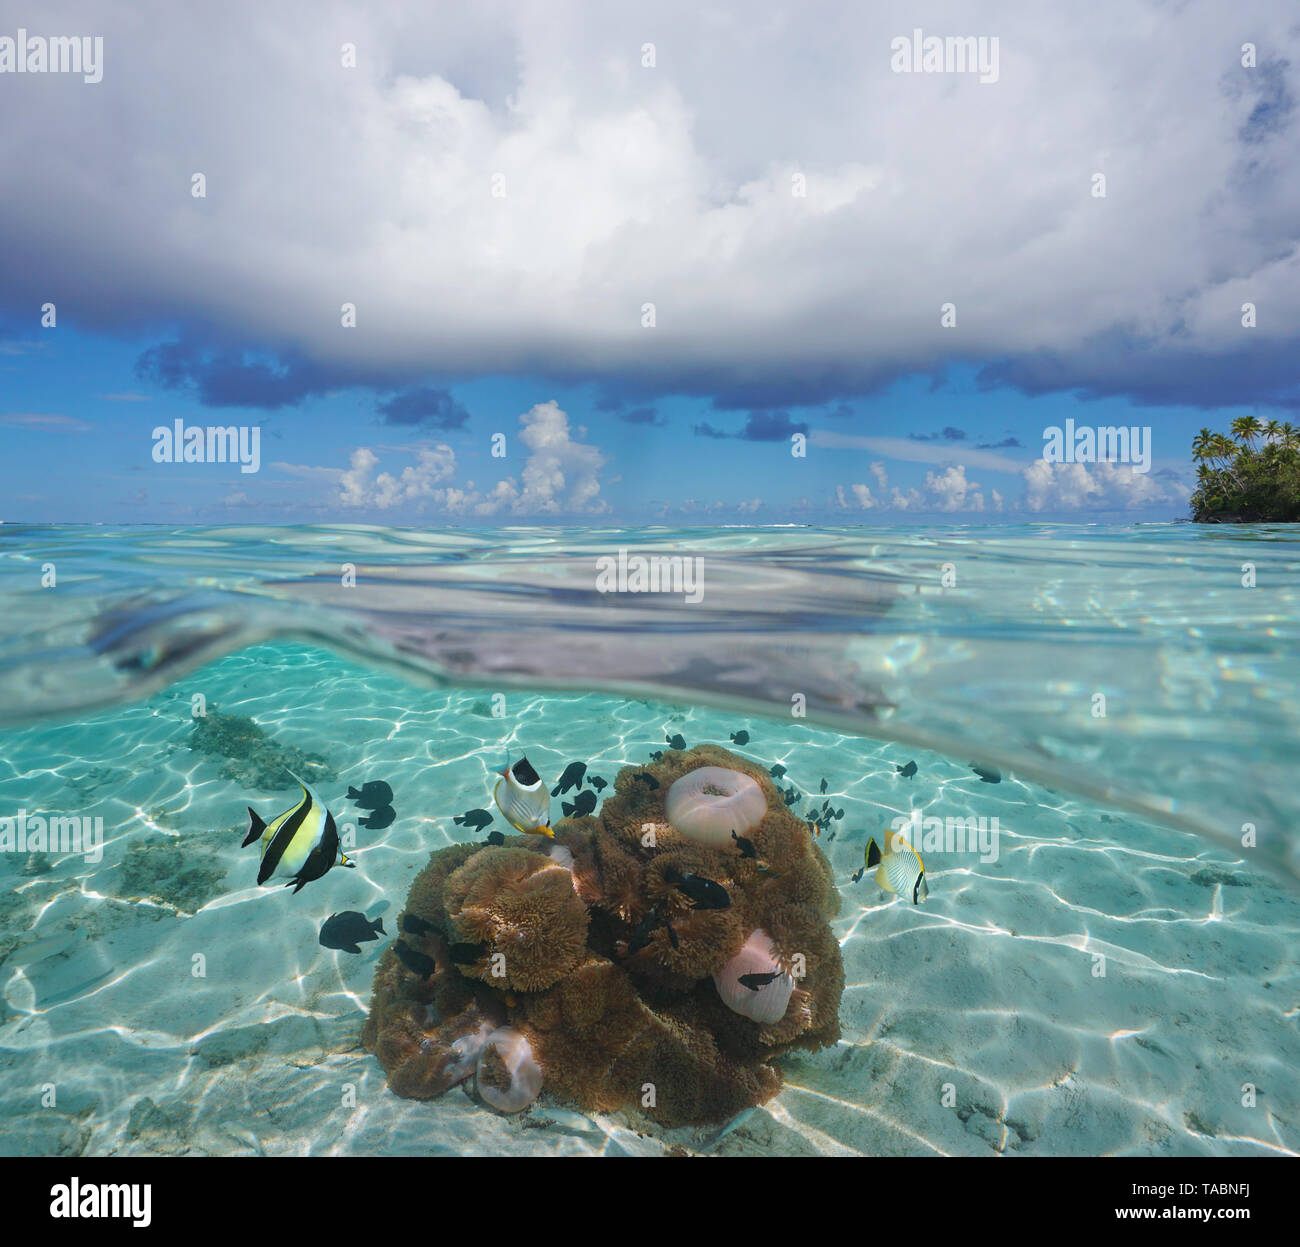 Seascape nuvoloso cielo azzurro orizzonte con anemoni di mare e pesci tropicali subacquea, Polinesia francese, oceano pacifico, split vista sopra e sotto l'acqua Foto Stock